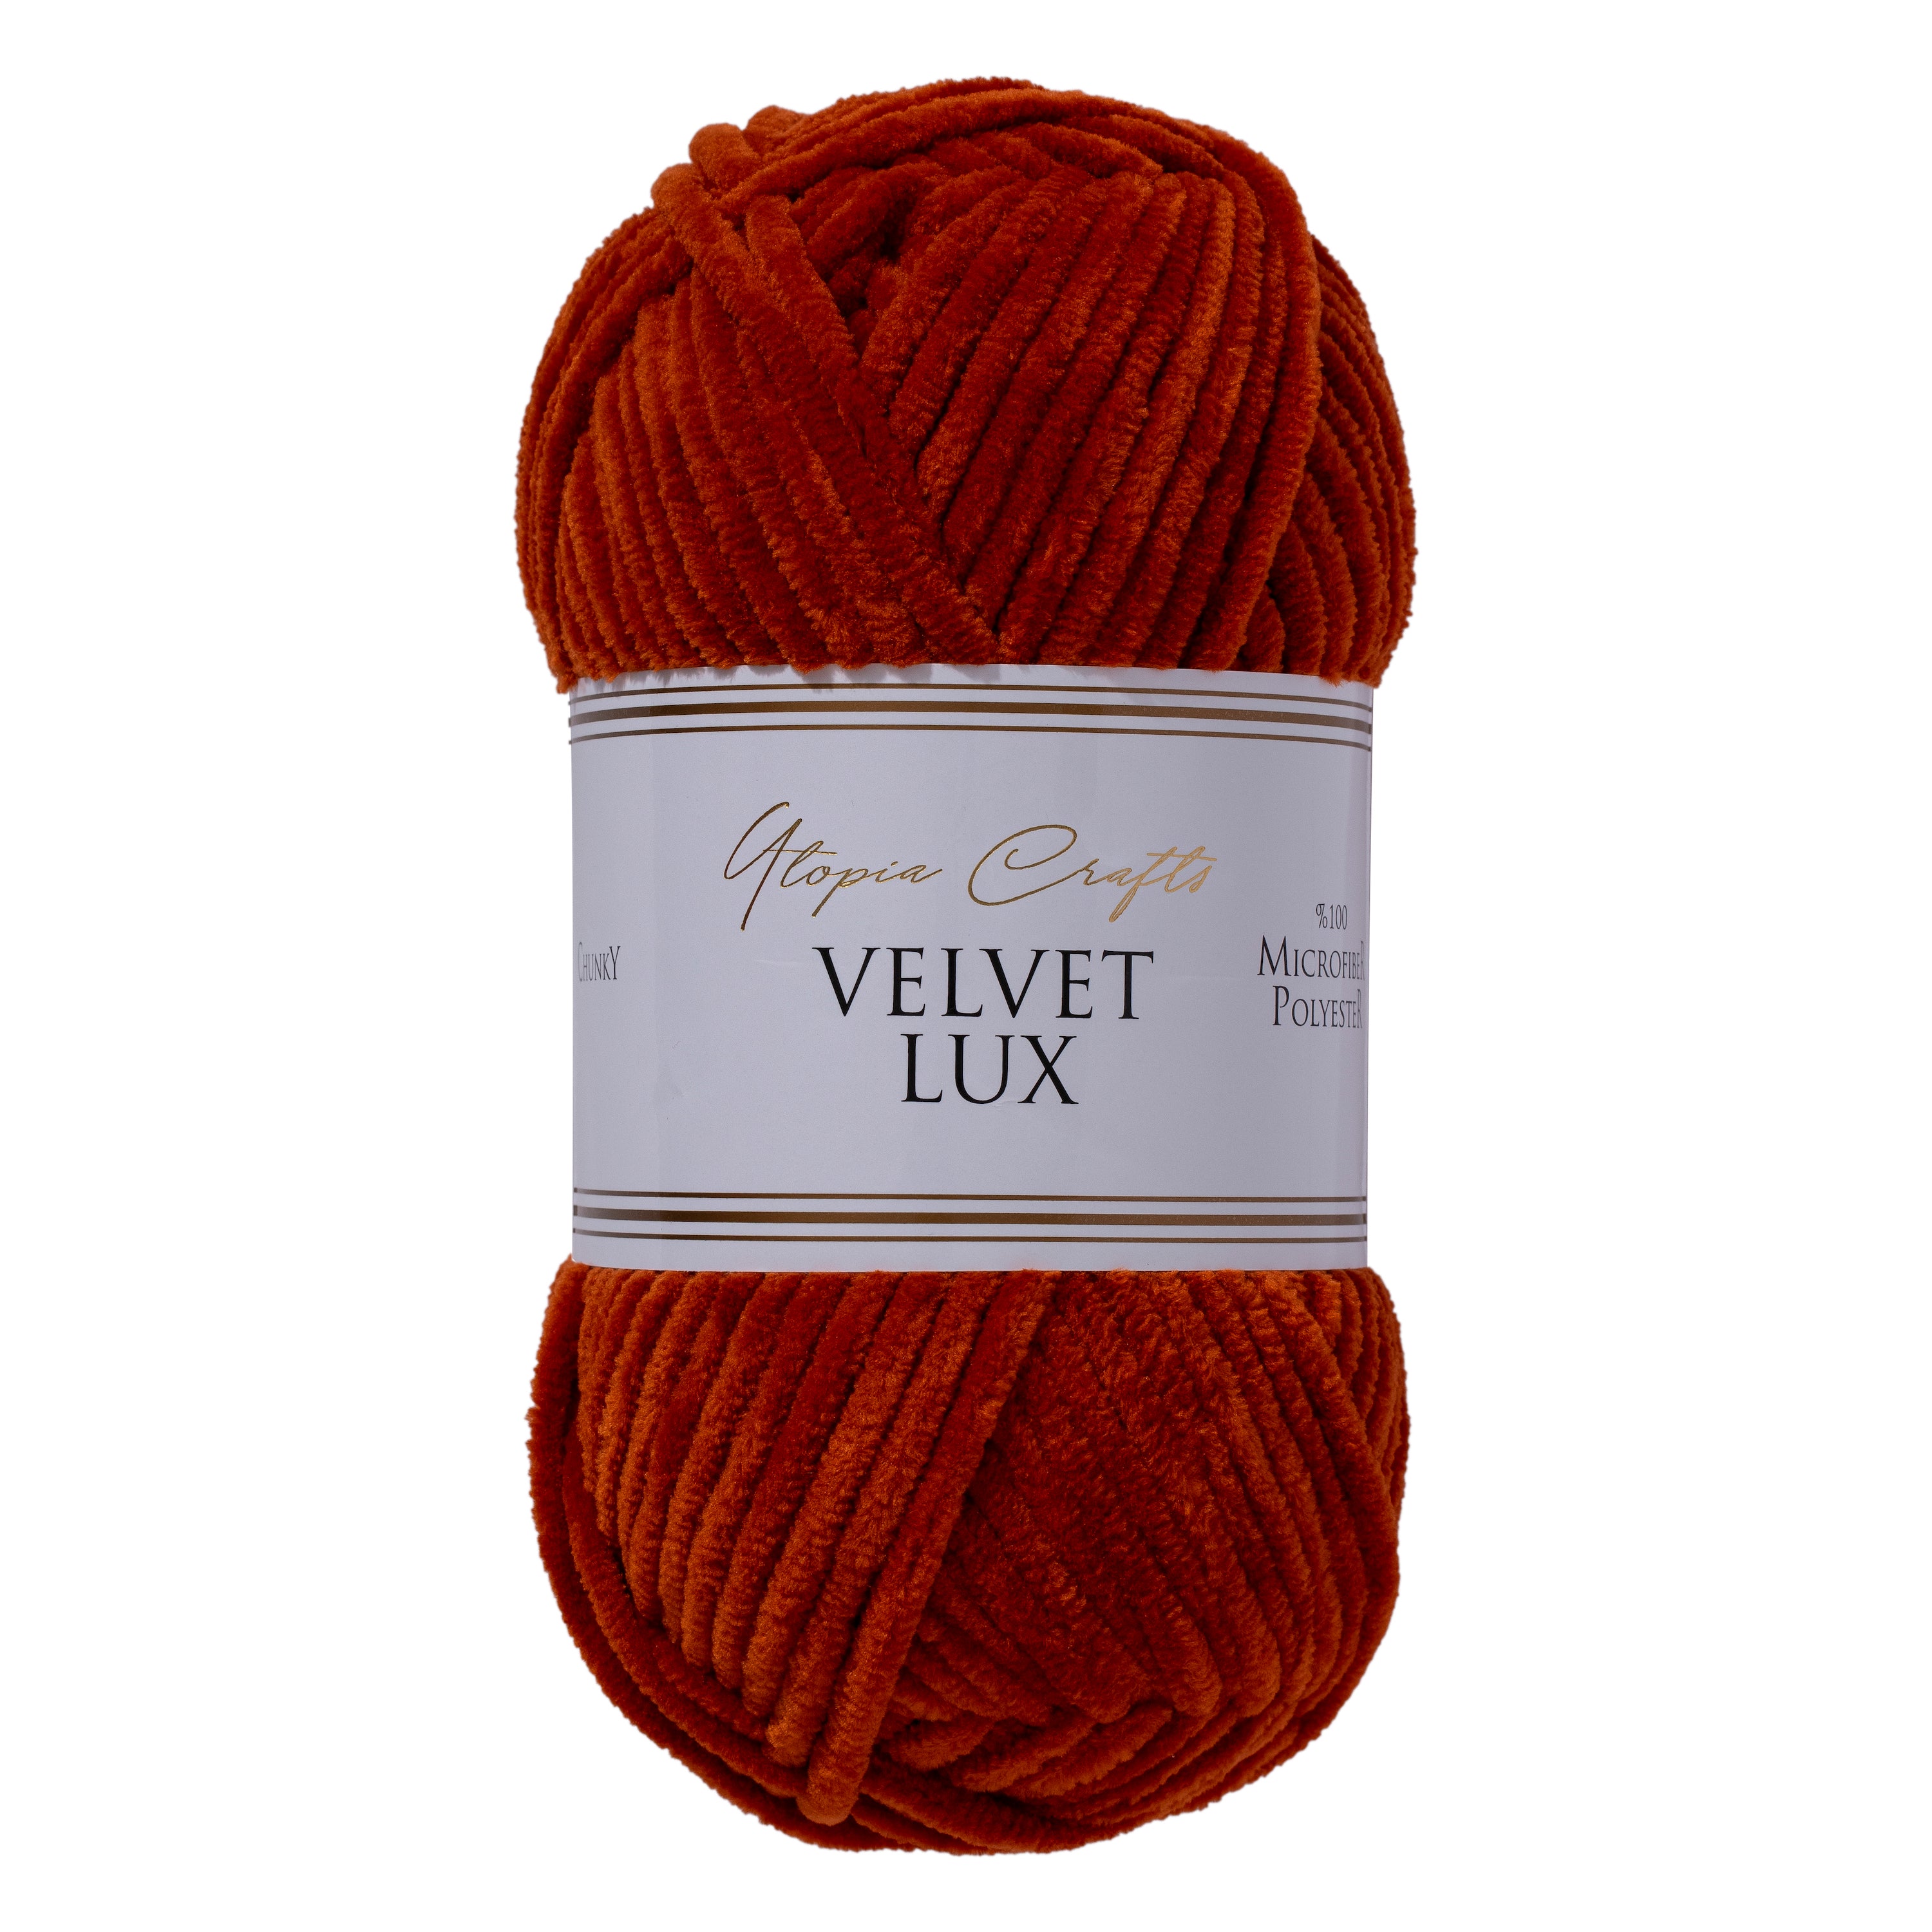 Utopia Crafts Velvet Lux Chenille Super Soft Chunky Yarn for Knitting and Crochet, 100g - 110m (Dark Orange)